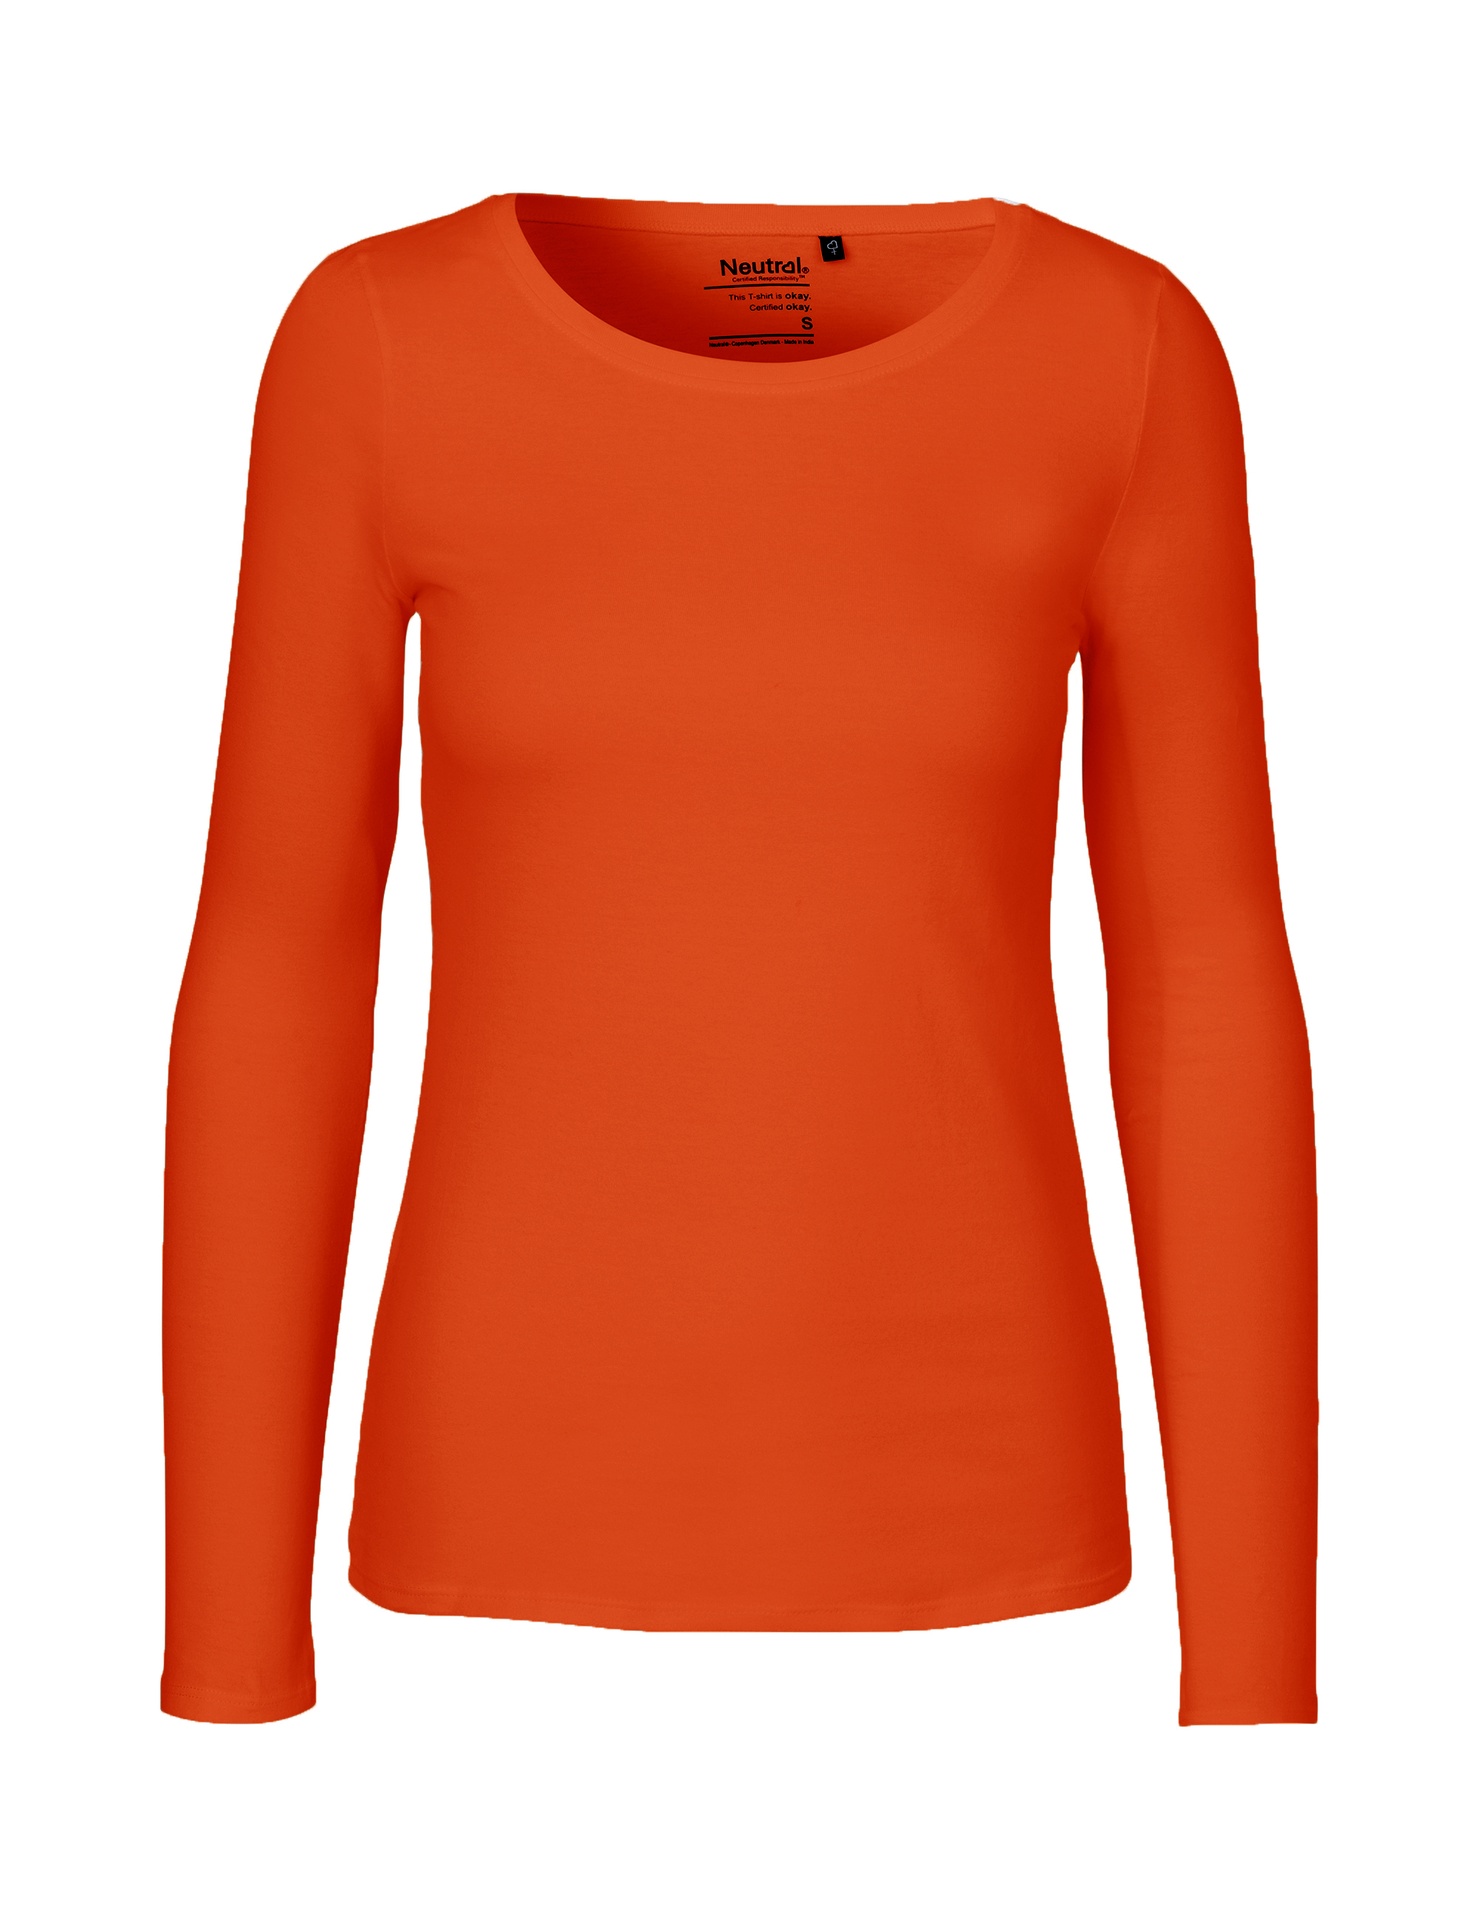 [PR/04717] Ladies Long Sleeve T-Shirt (Orange 30, XS)